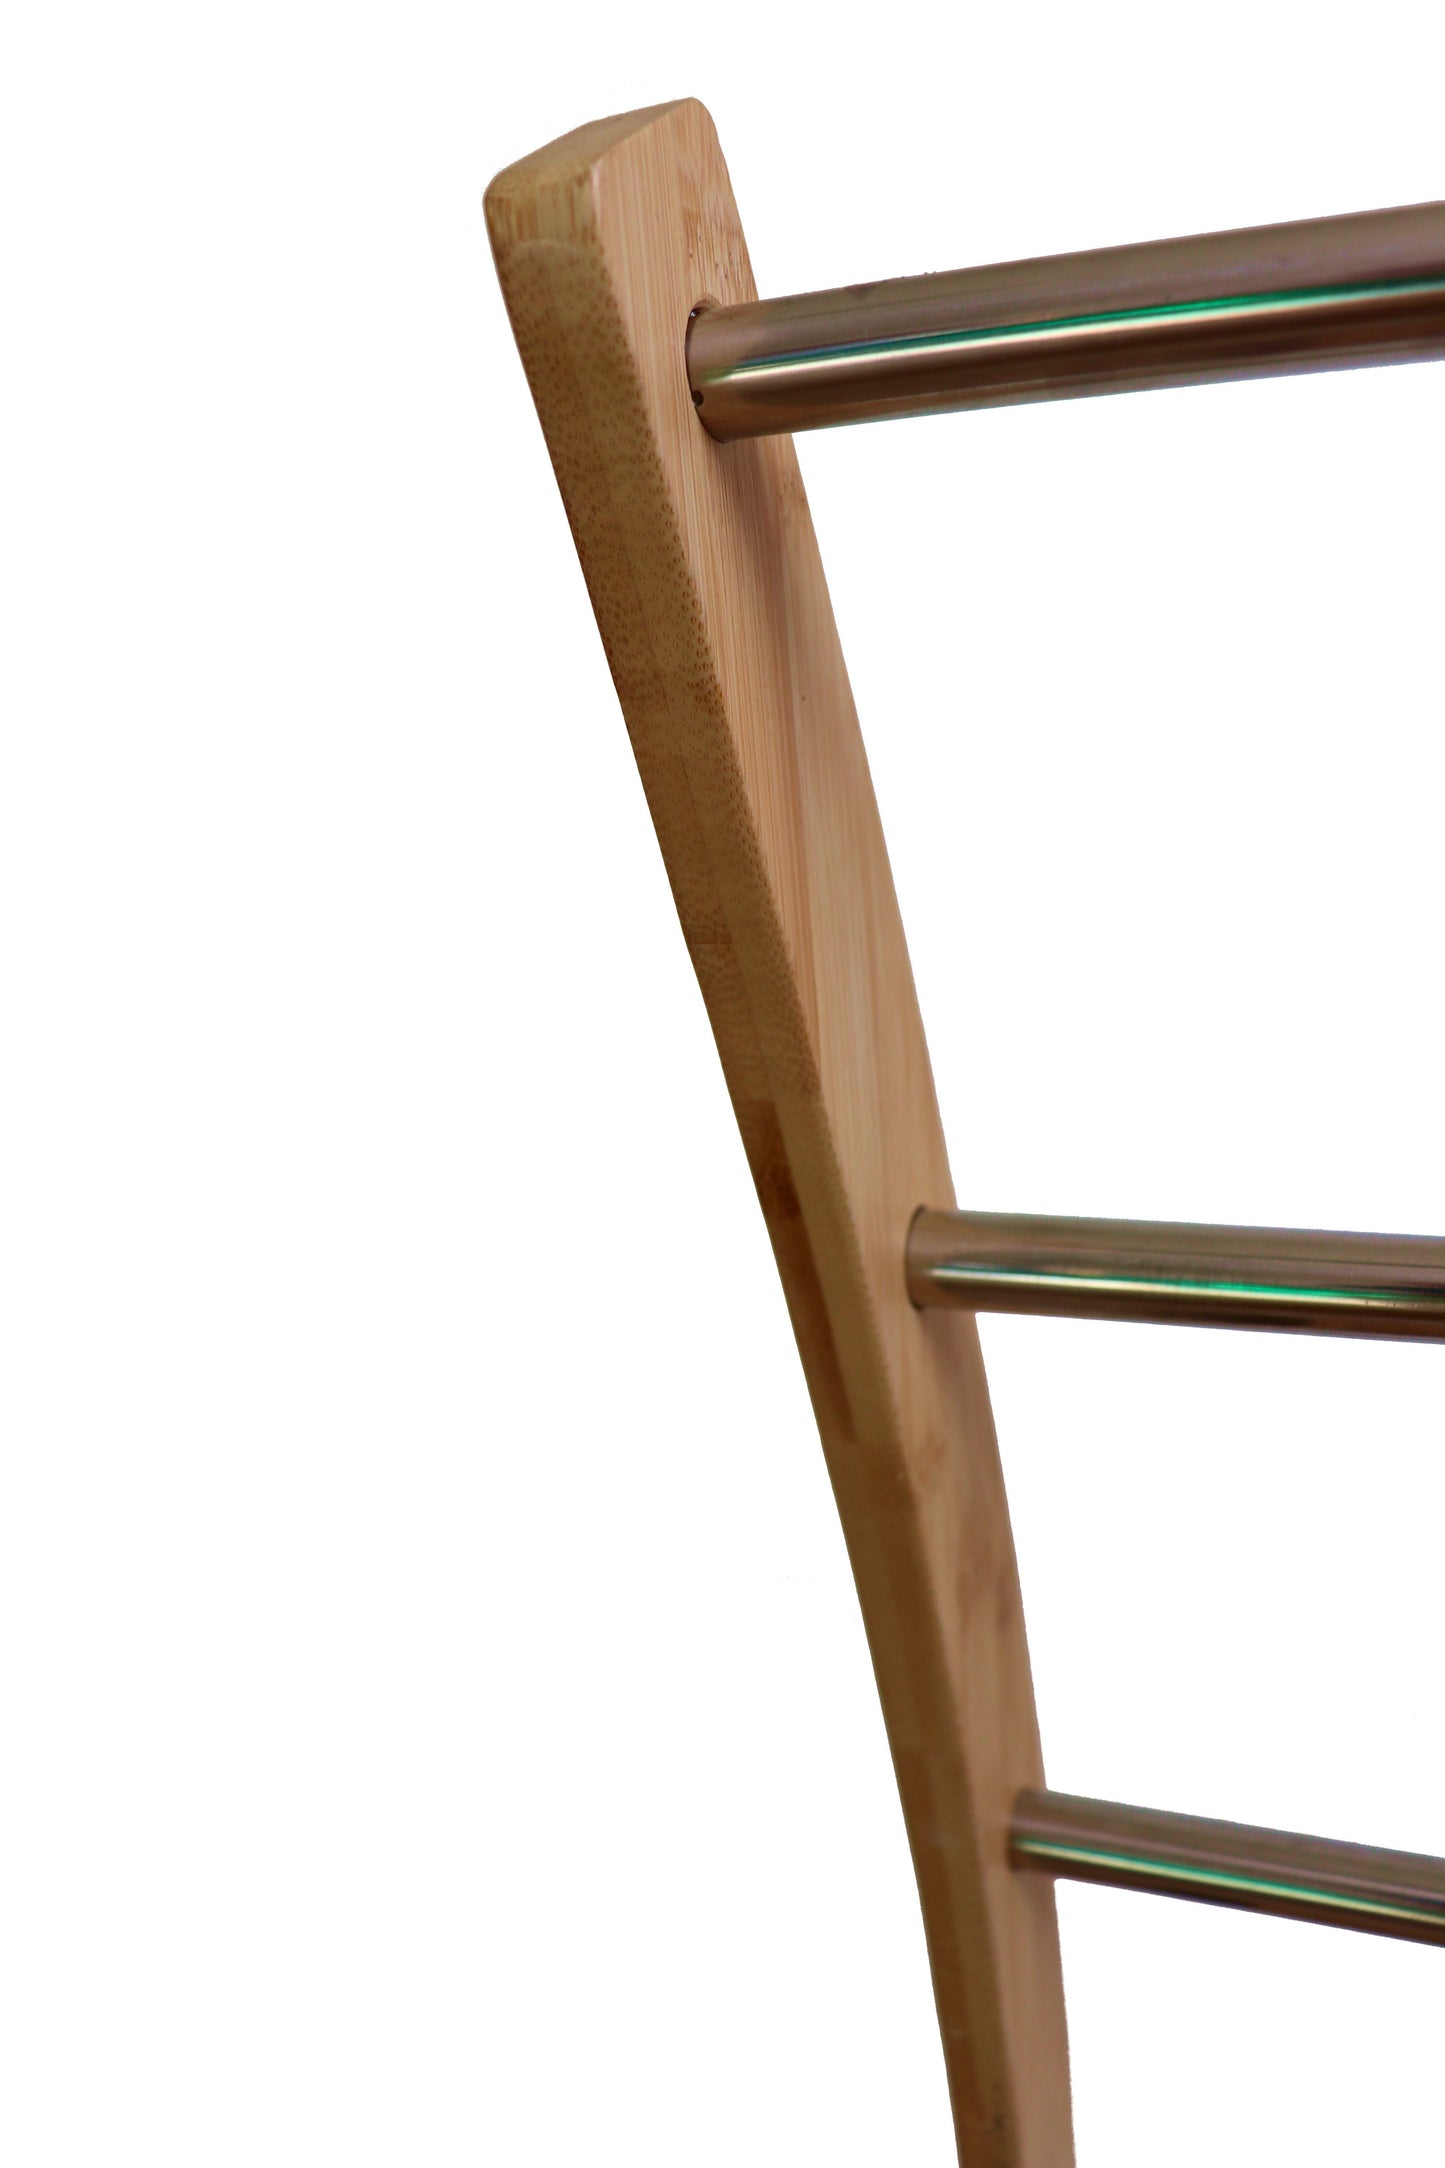 Bamboo Towel Bar Metal Holder Rack 3-Tier Freestanding and Bottom shelf for Bathroom - BM House & Garden